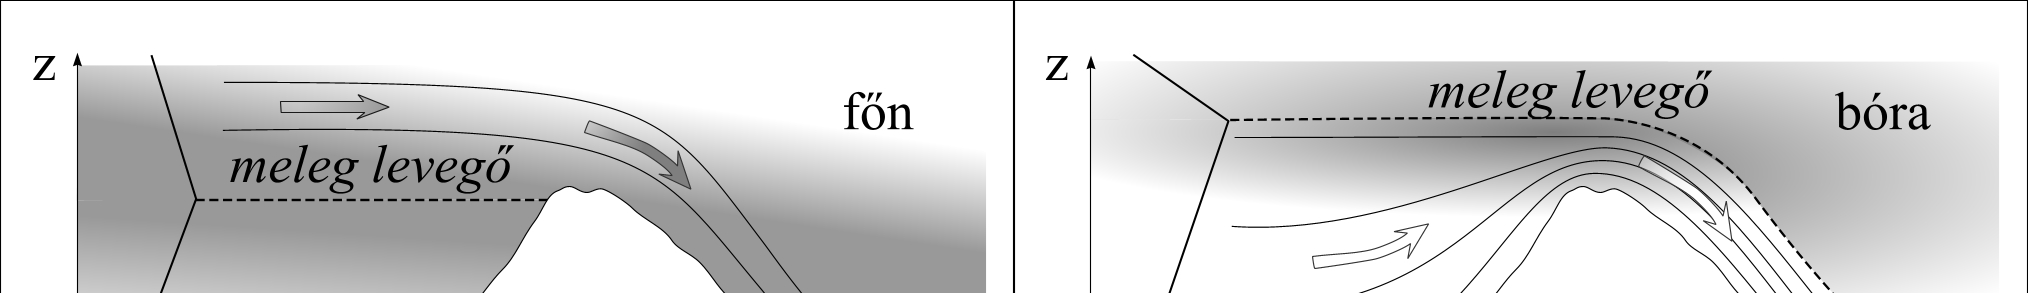 Bukószél kialakulása inverziós réteg esetén Ha az inverziós réteg vastagsága kisebb, mint a hegy magassága (a. ábra) az inverzió miatt a szél felőli oldalon a levegő nem tud felemelkedni.